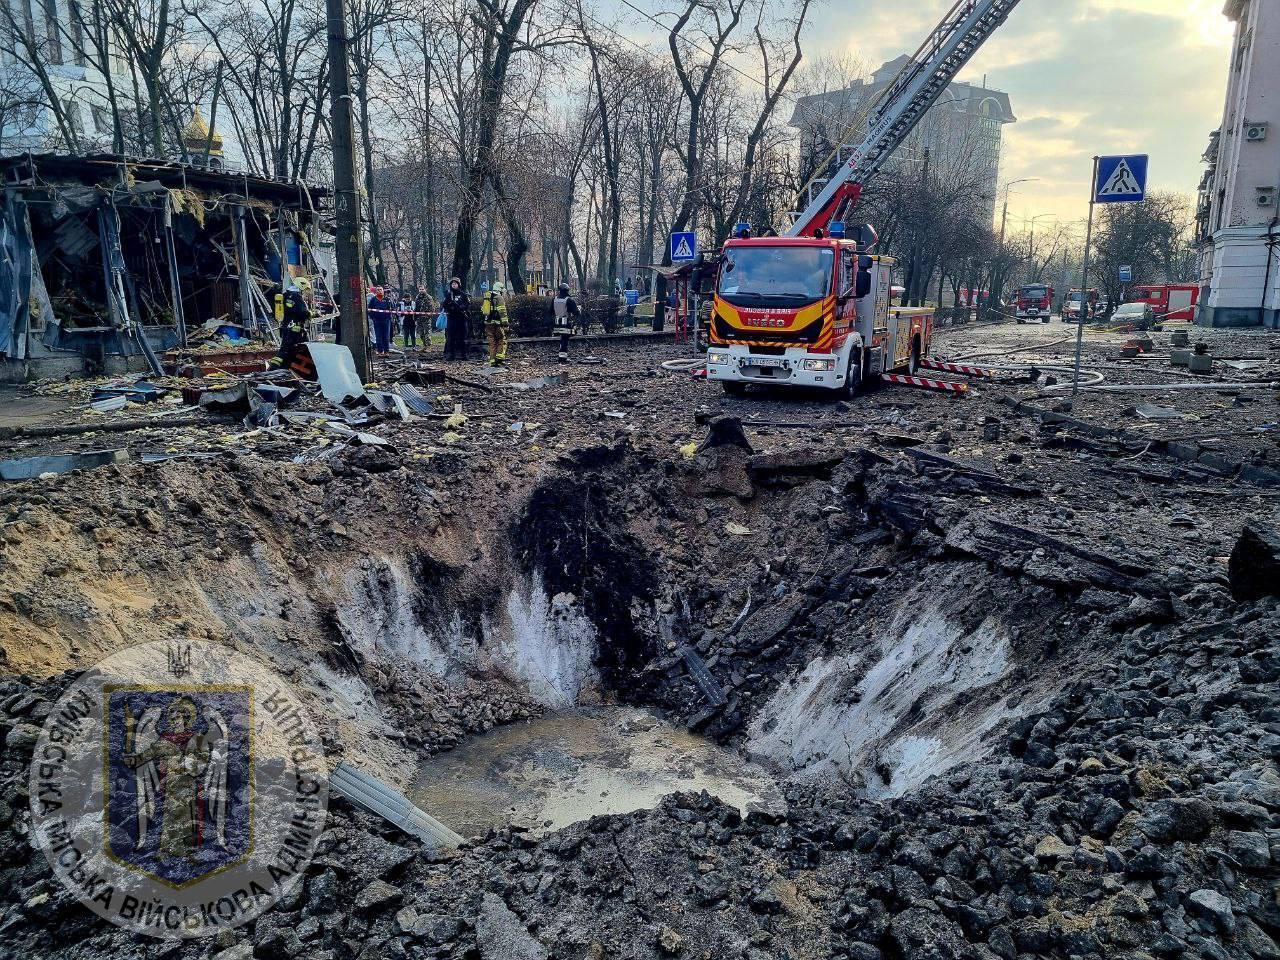 Krater w miejscu uderzenia rakiety i zniszczone budynki: skutki ataku rakietowego na Kijów 21 marca. Zdjęcia